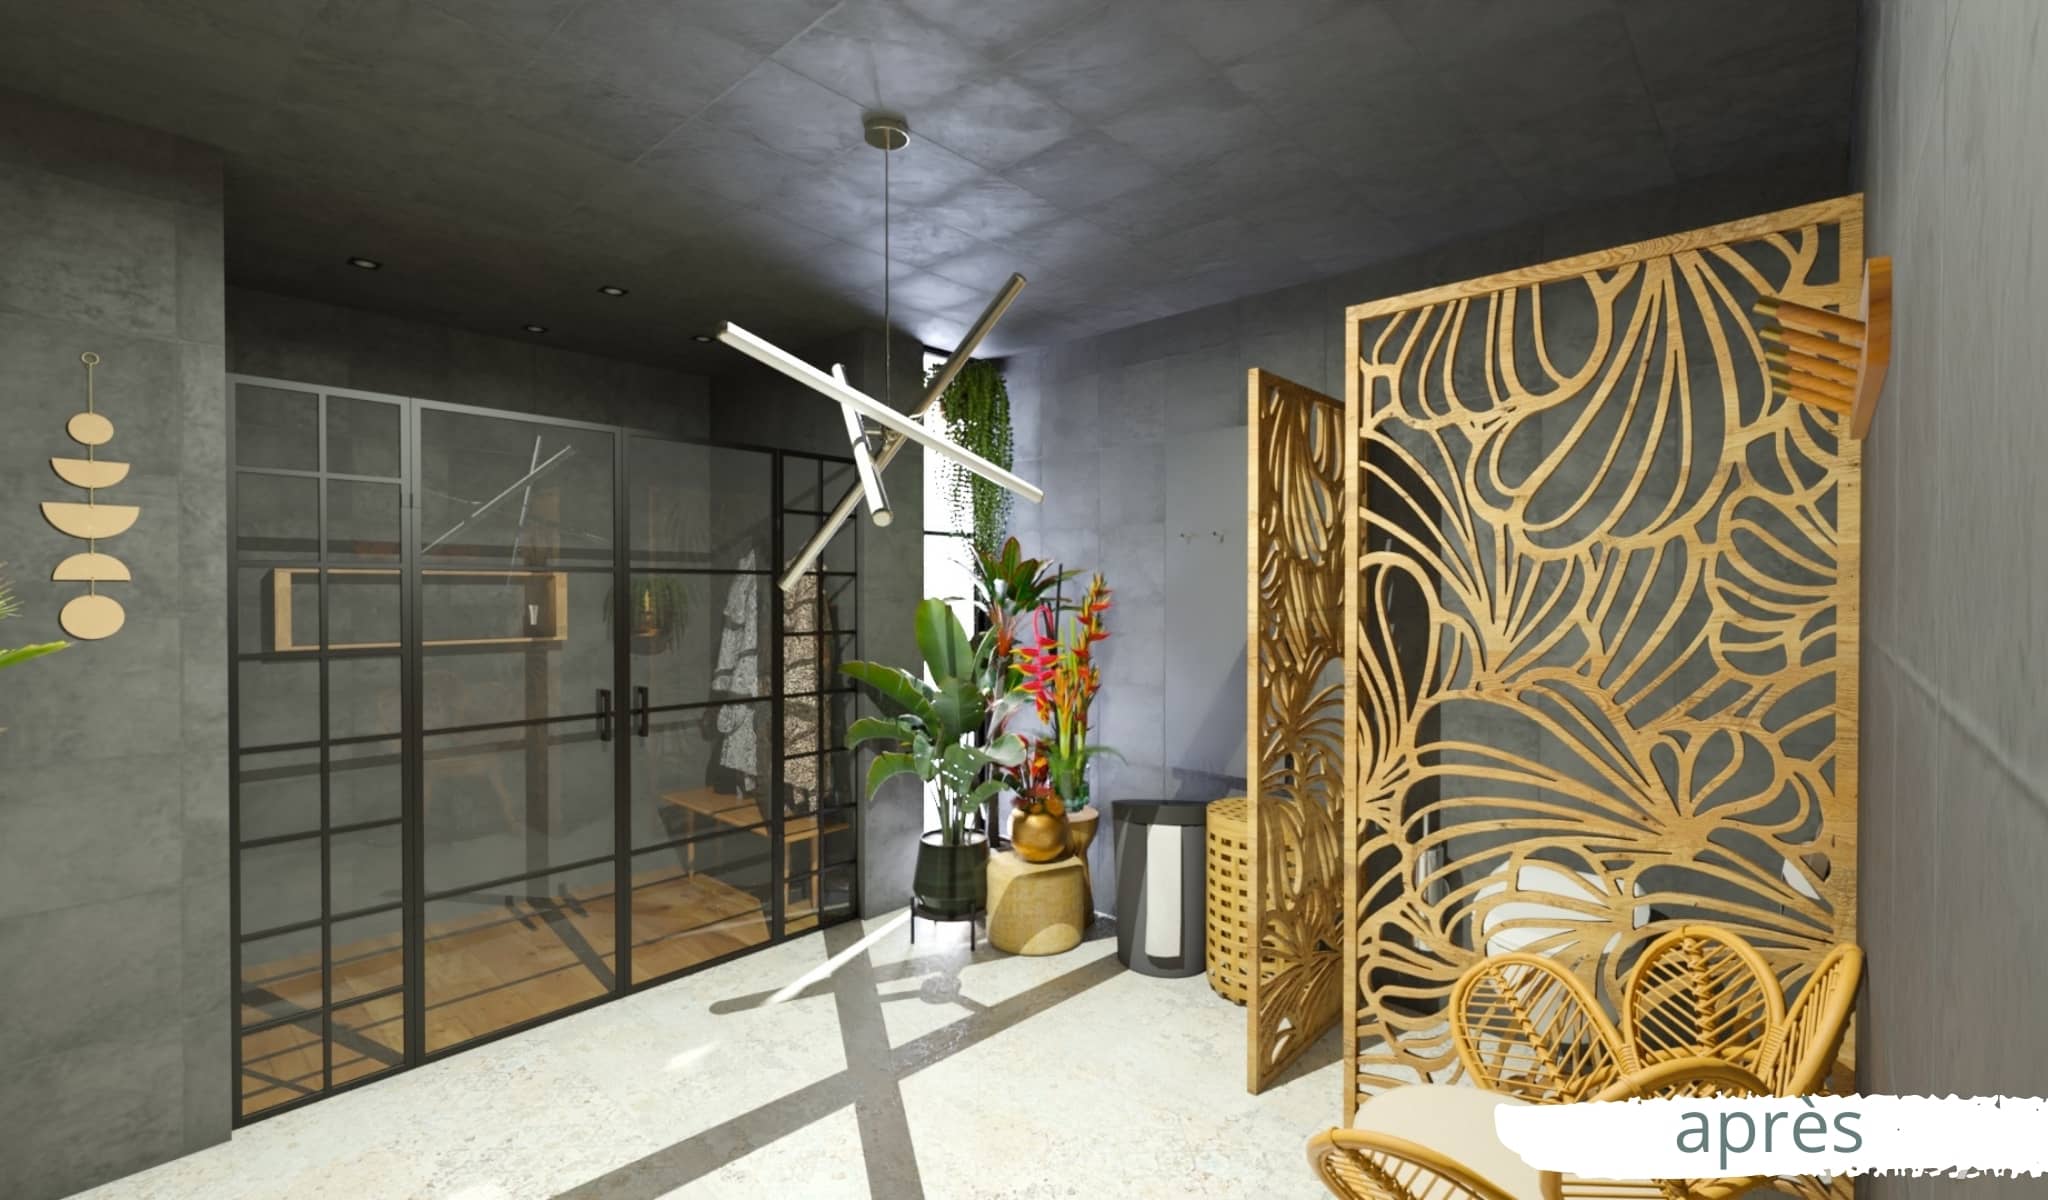 wherdeco-decoration-renovation-home staging-ecologique-duvertdansladeco-africa spa (1)